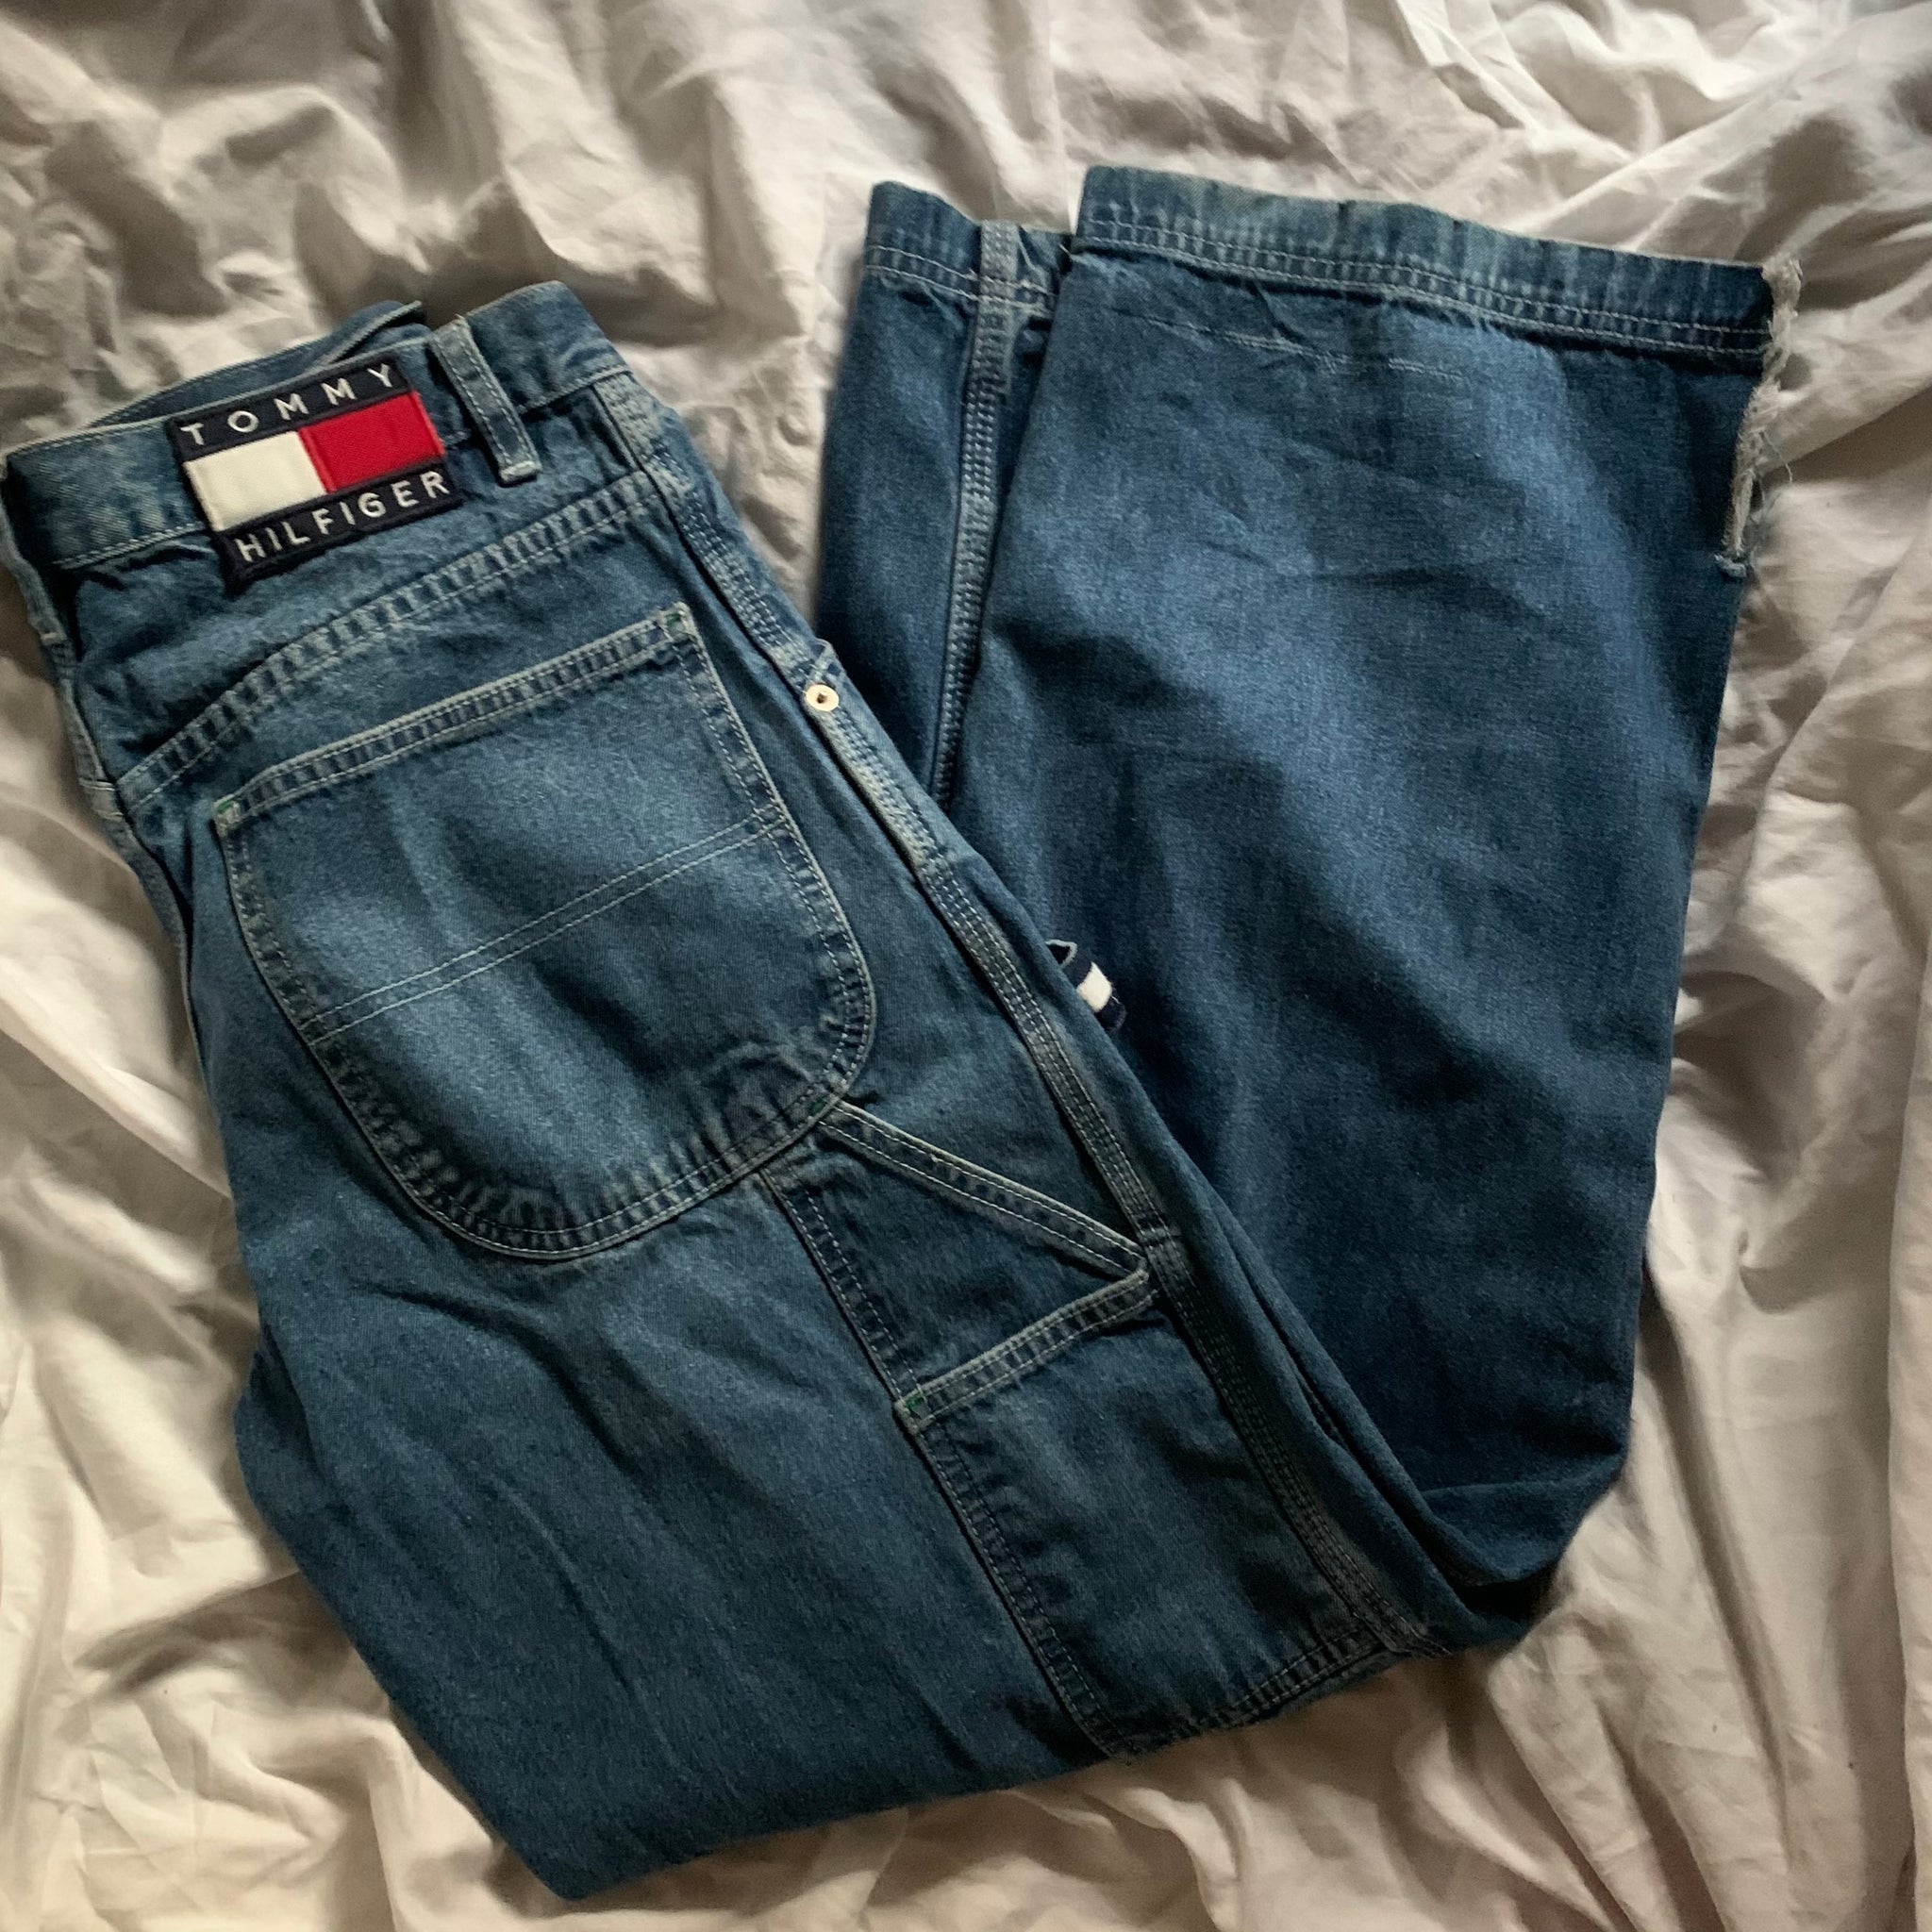 carpenter jeans tommy hilfiger